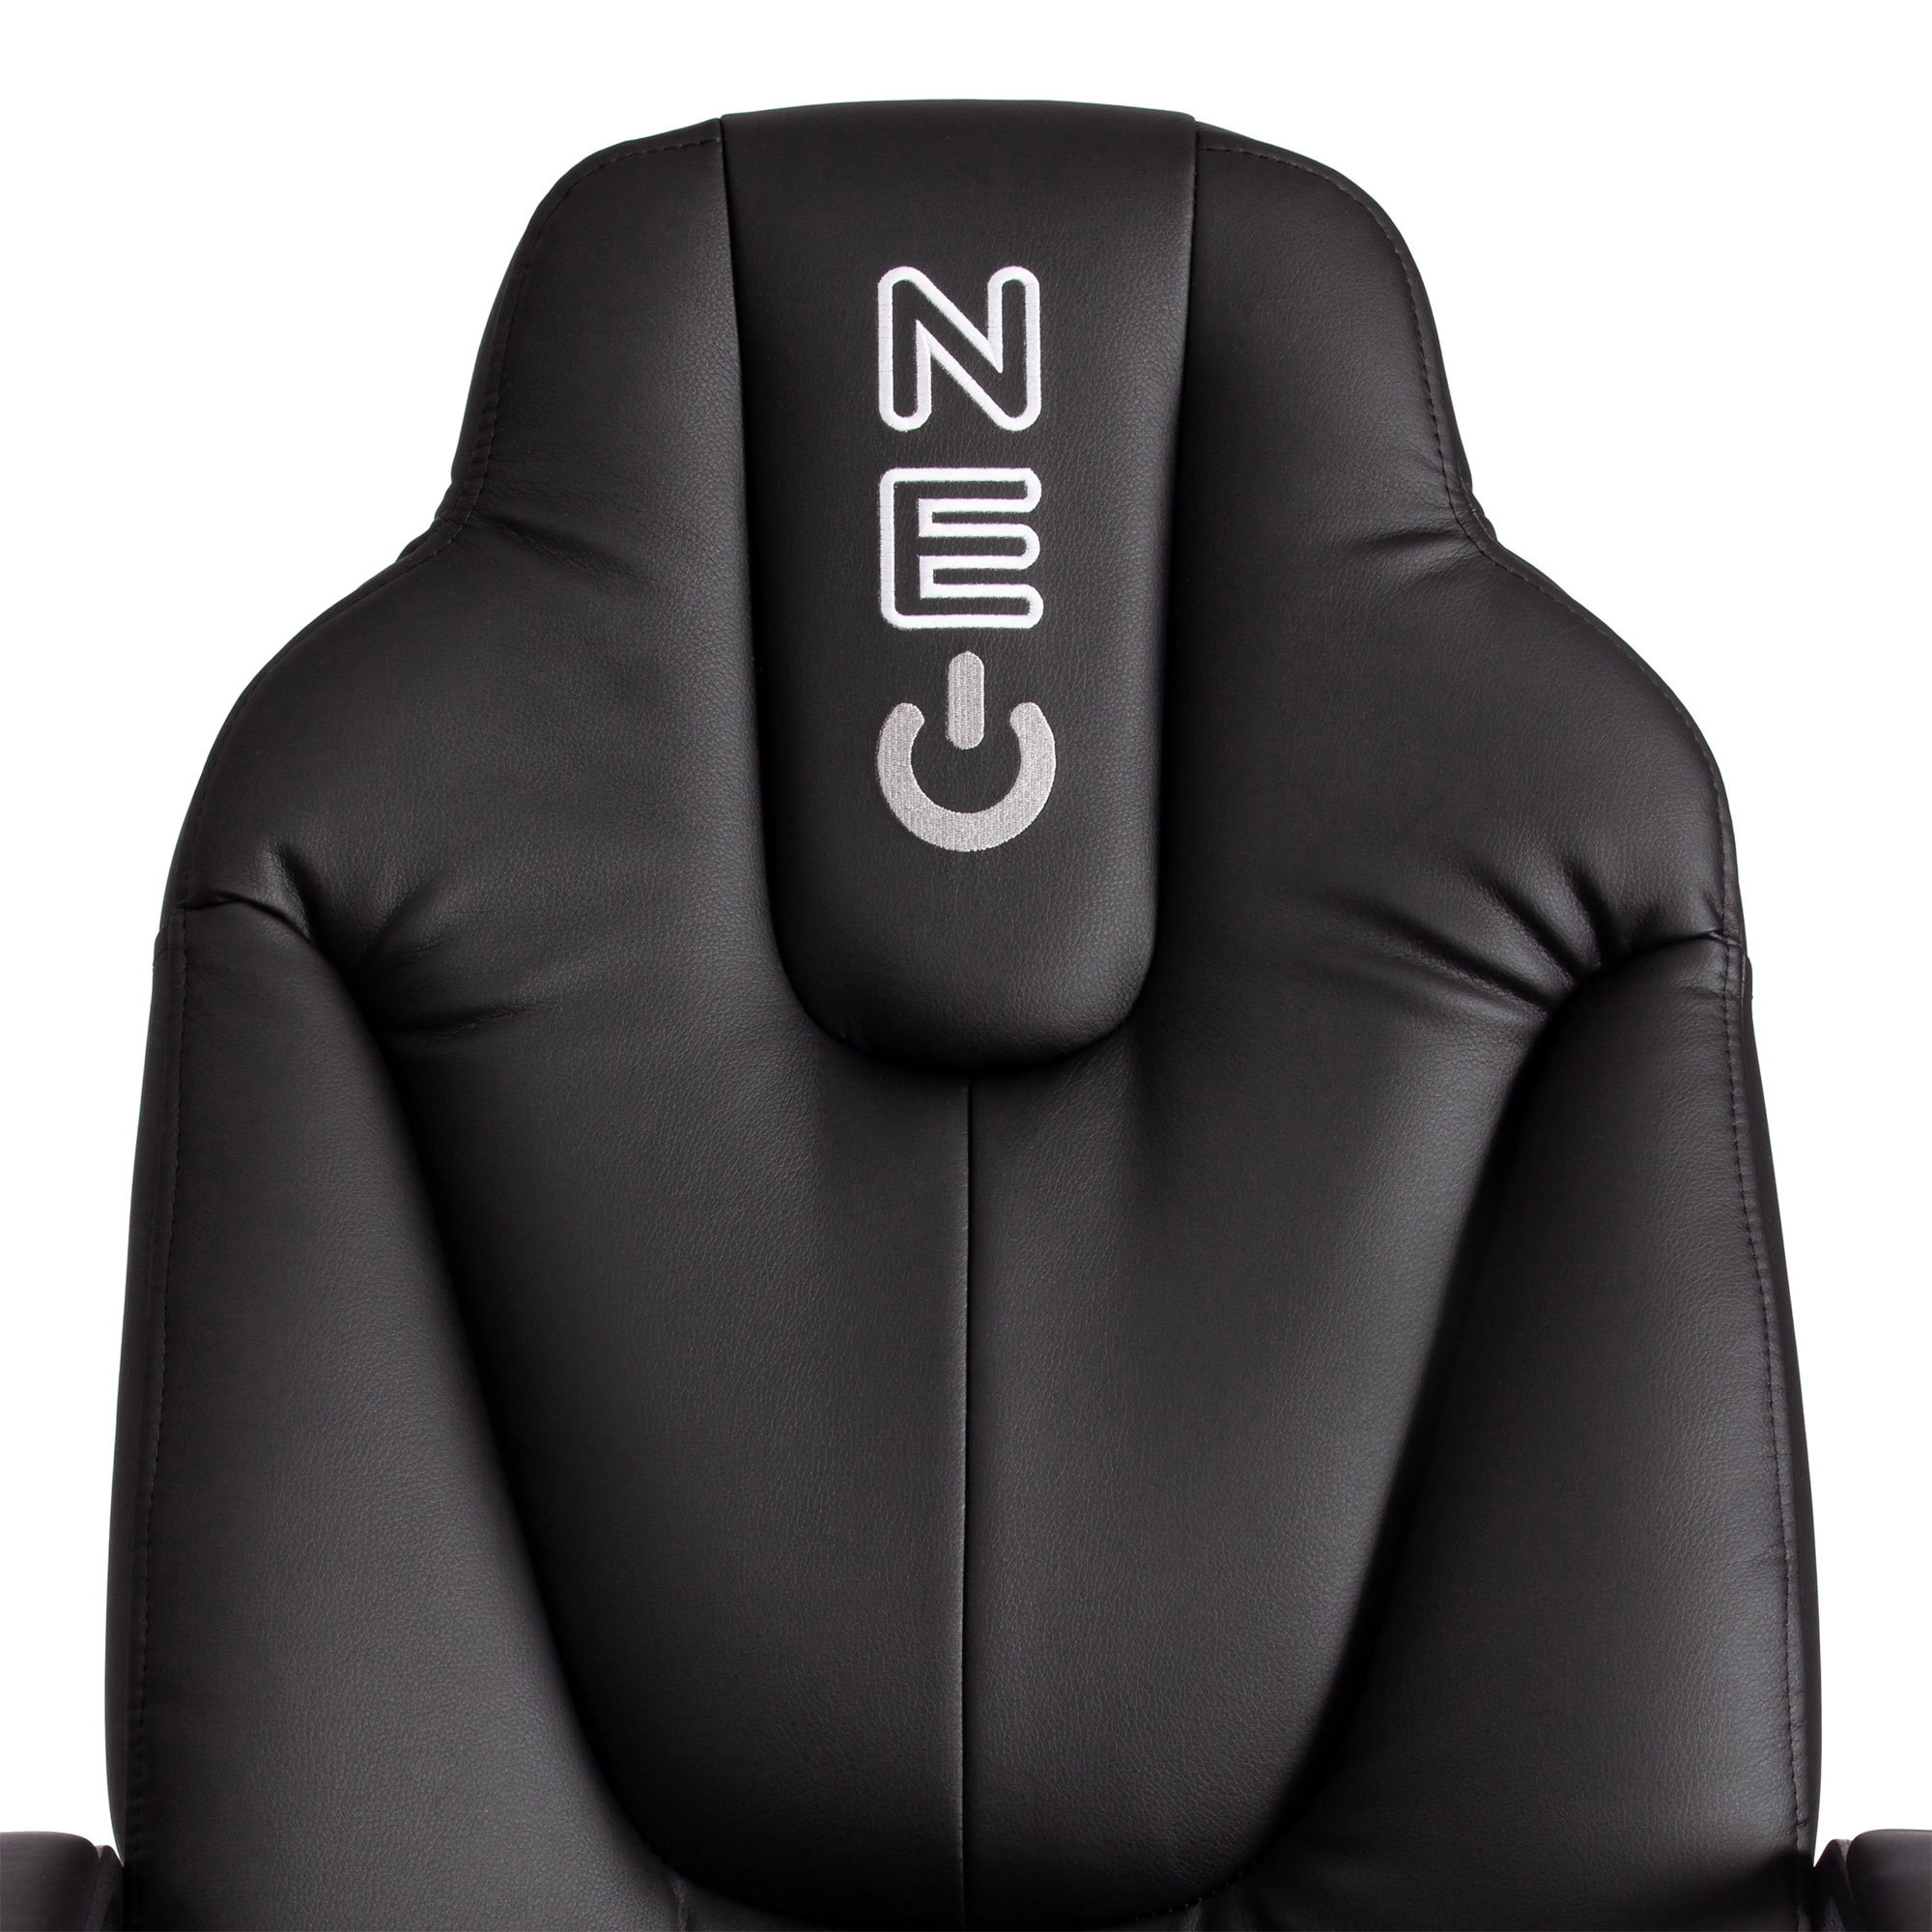 Кресло компьютерное TC Neo искусственная кожа чёрное 64х49х122 см, цвет чёрный - фото 5